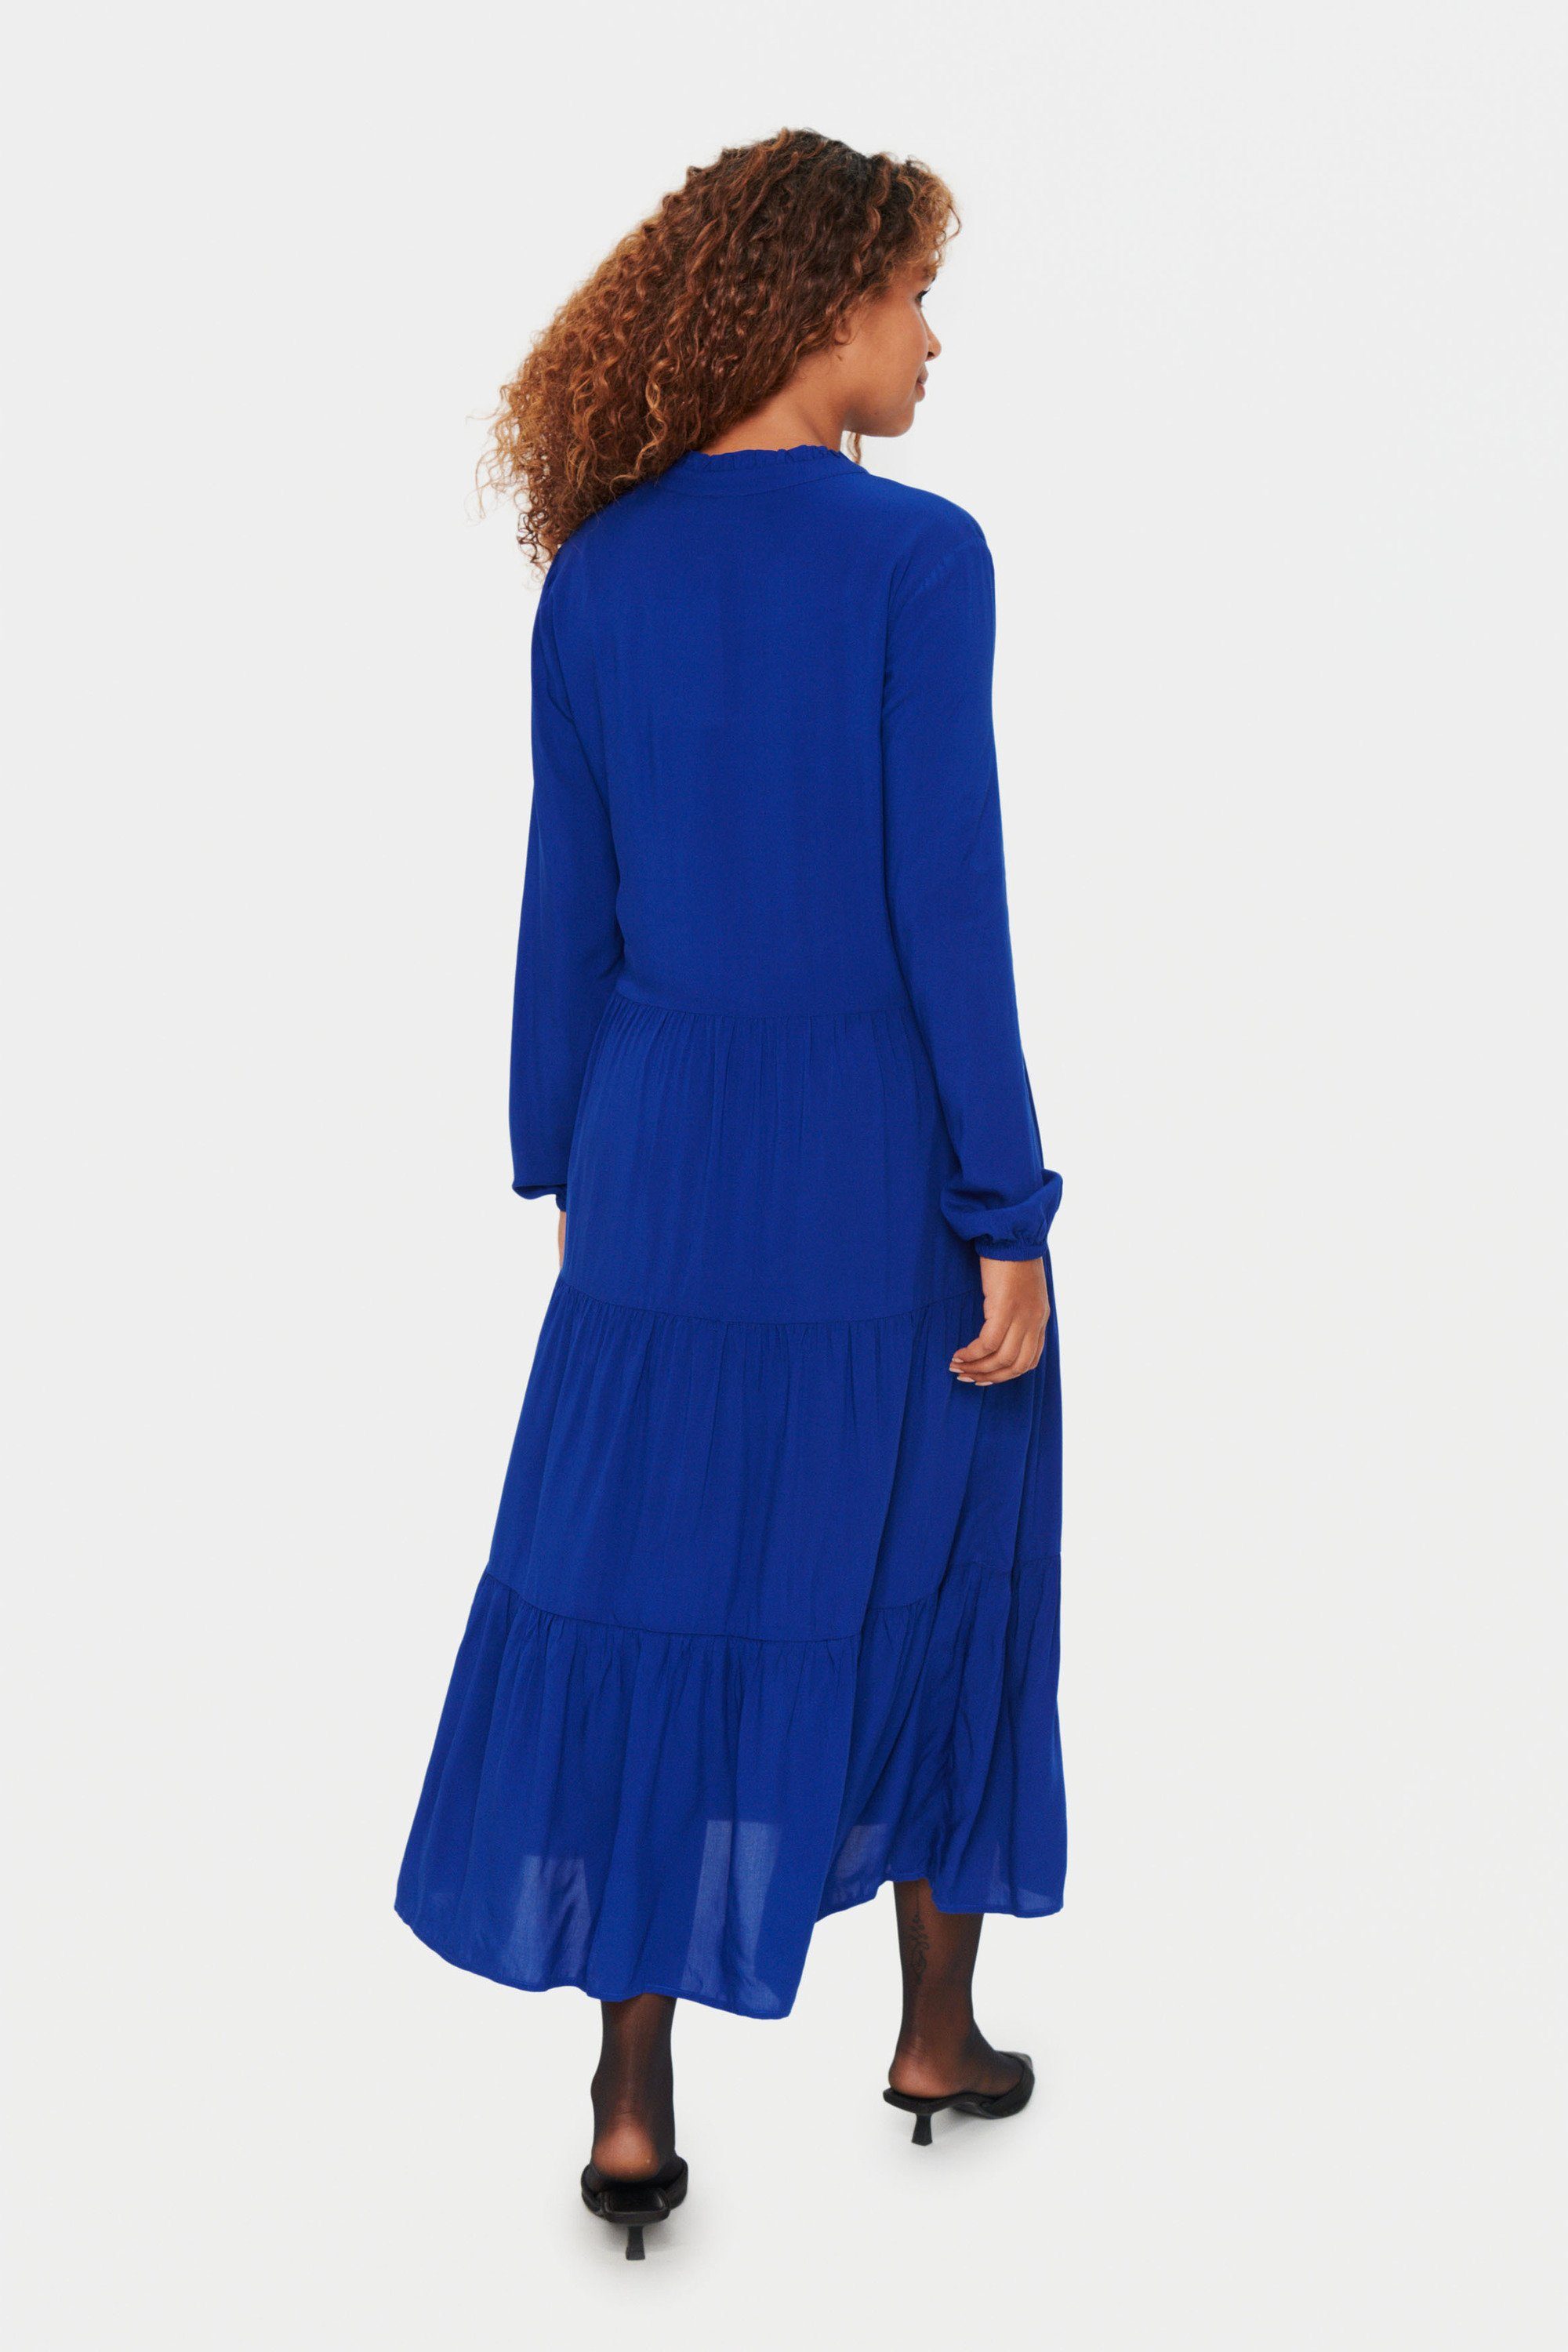 Saint Tropez Kleid Sodalite Blue Jerseykleid EdaSZ